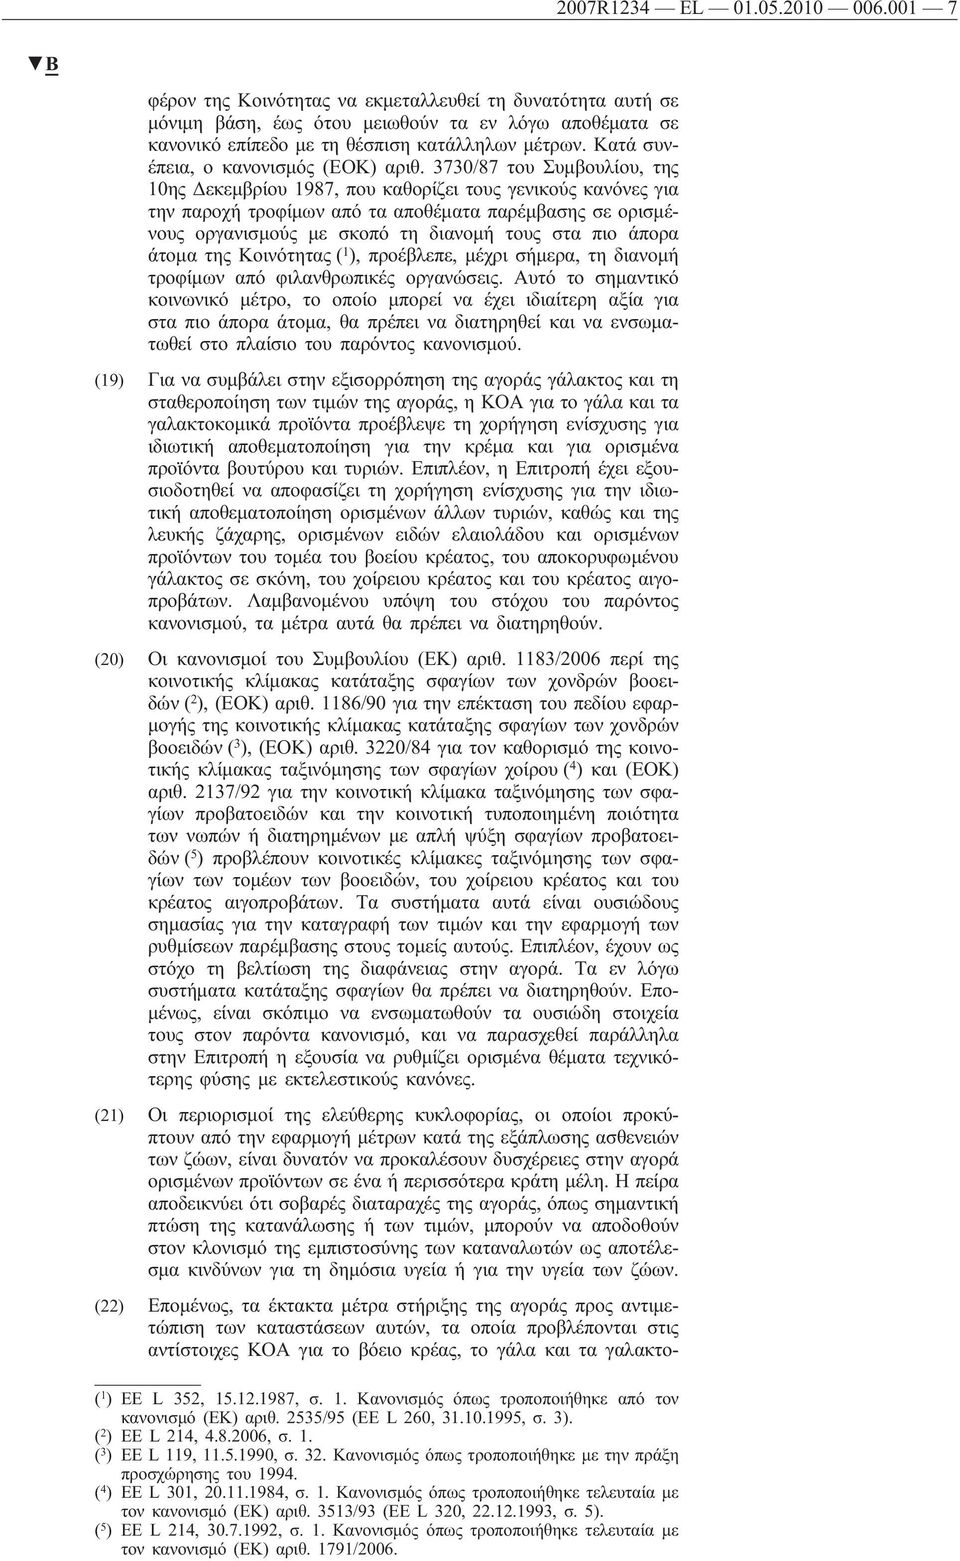 3730/87 του Συμβουλίου, της 10ης Δεκεμβρίου 1987, που καθορίζει τους γενικούς κανόνες για την παροχή τροφίμων από τα αποθέματα παρέμβασης σε ορισμένους οργανισμούς με σκοπό τη διανομή τους στα πιο